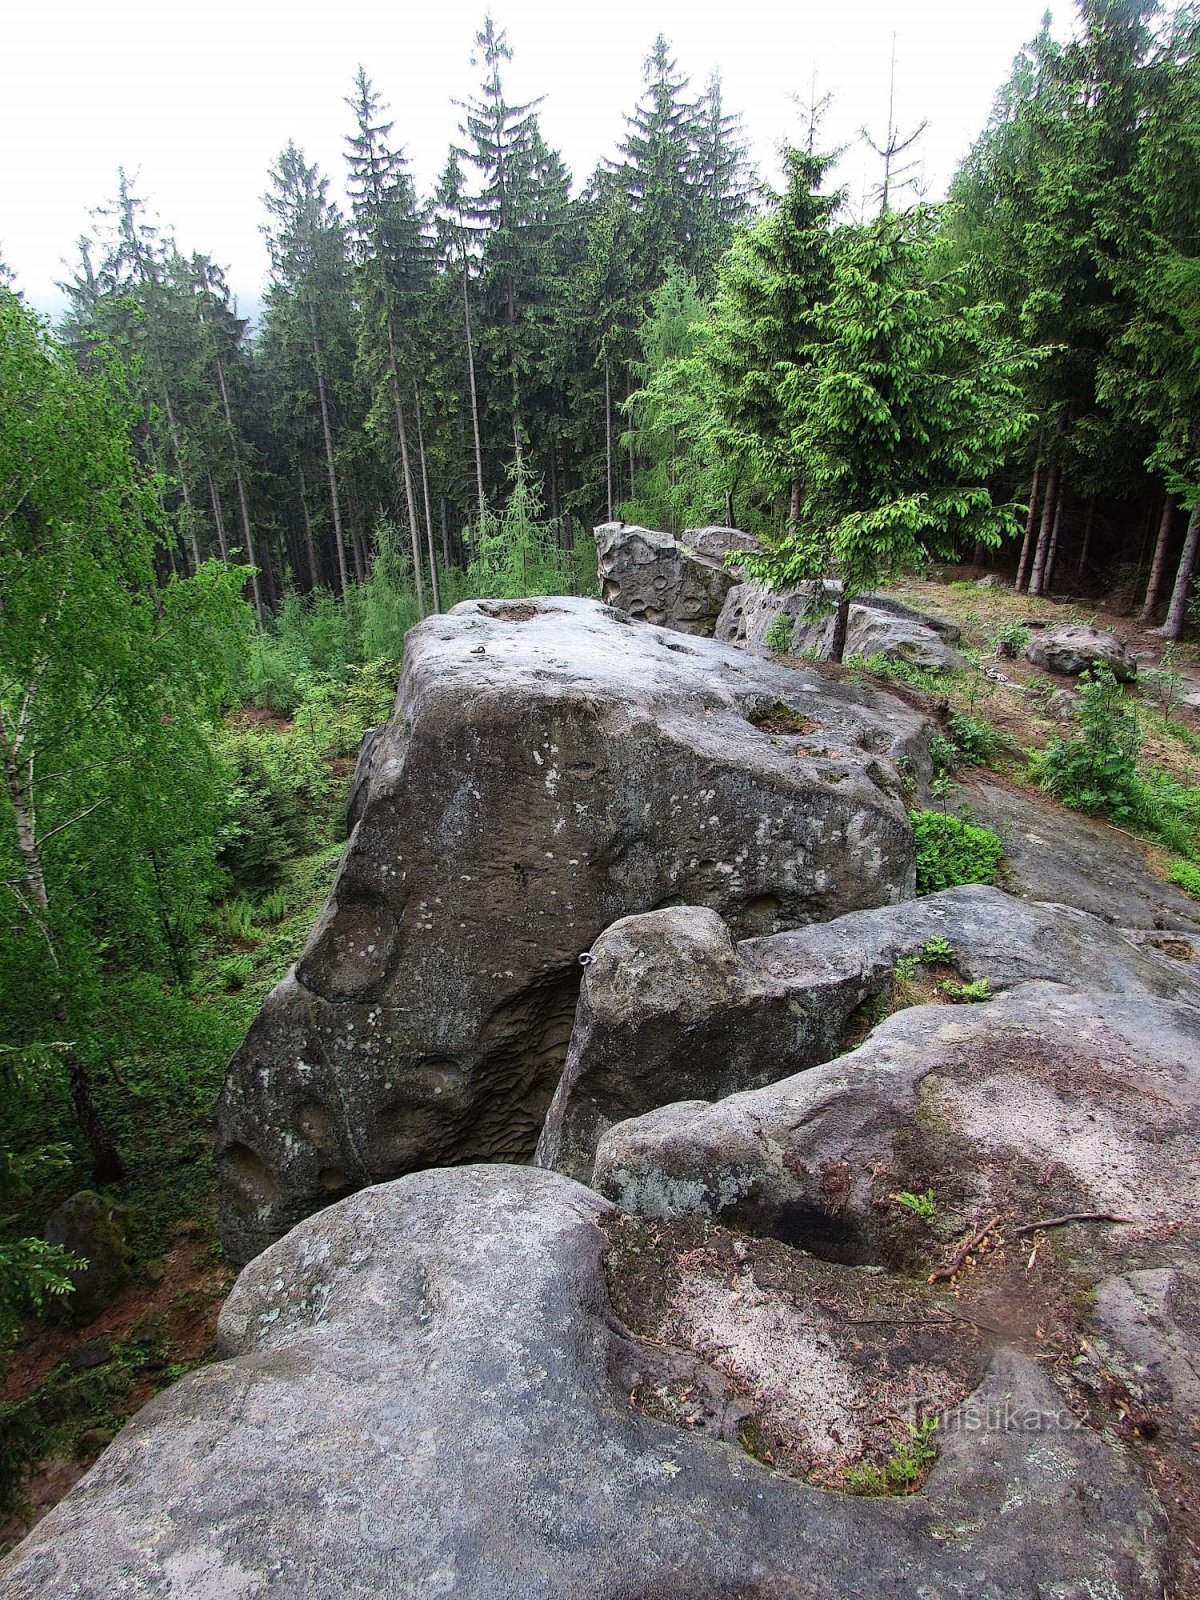 Views from the Lačnov rocks